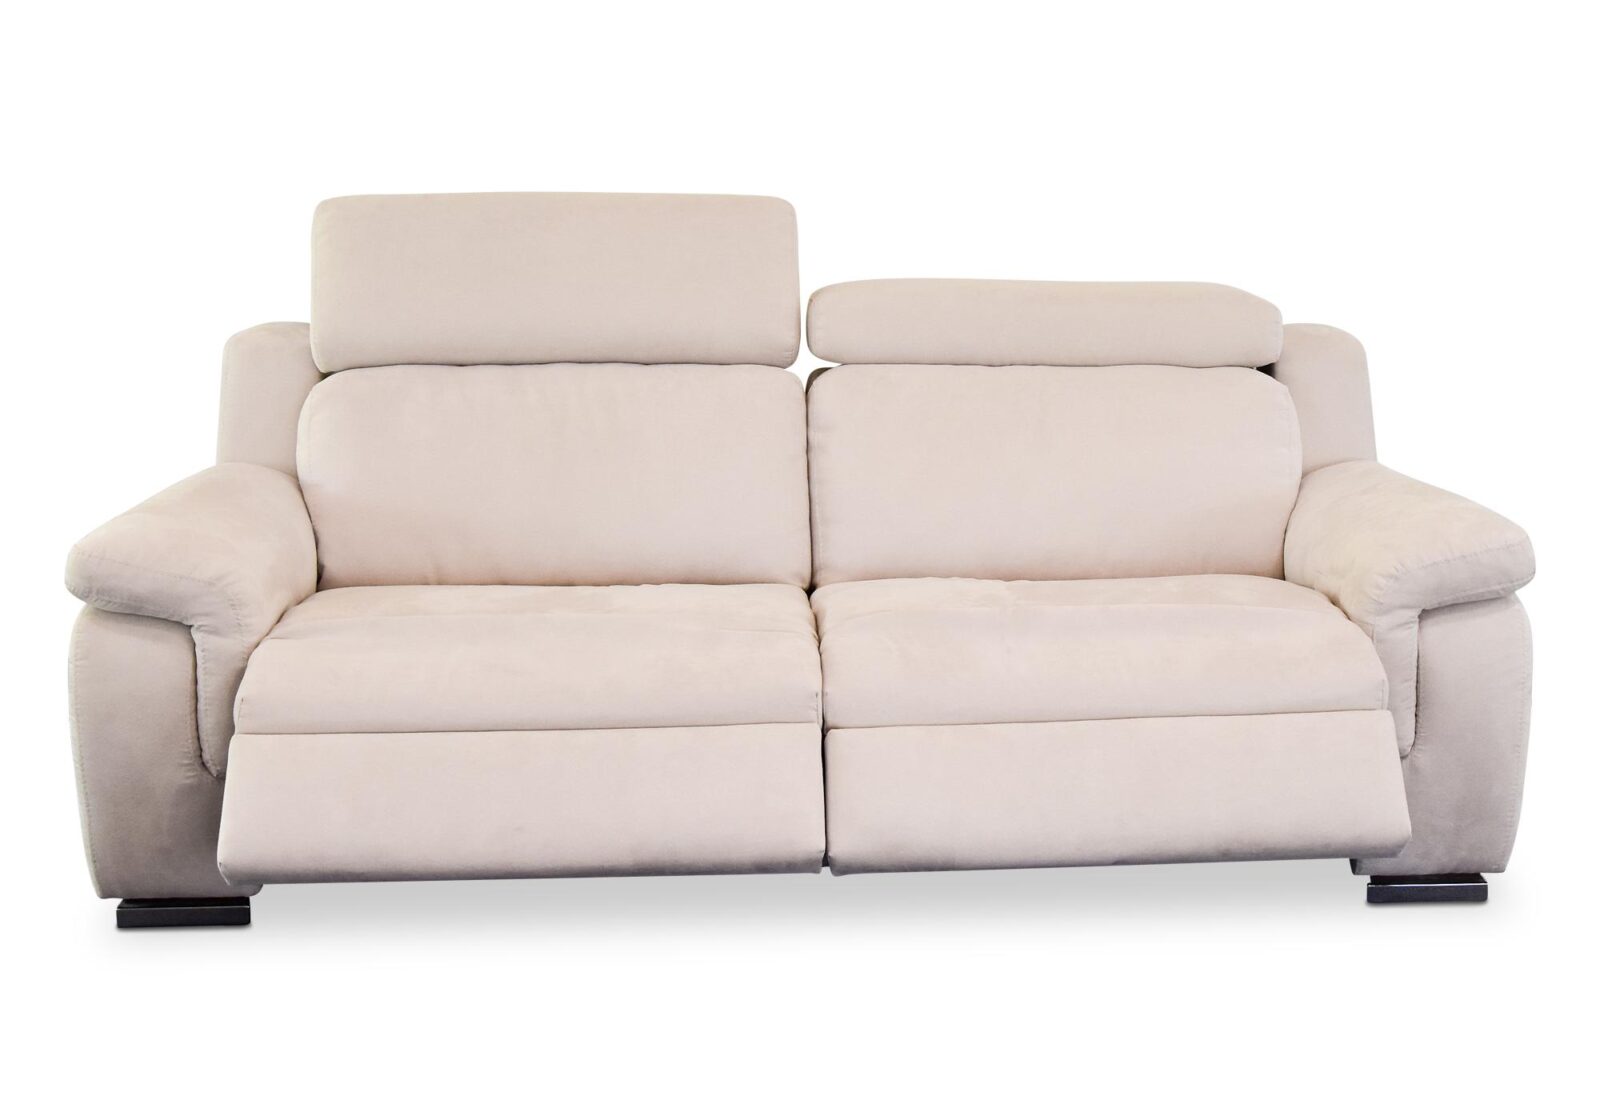 3er Sofa Milano mit Doppel-Relaxfunktion. Bezug: Leder. Farbe: Beige. Erhältlich bei Möbel Gallati.